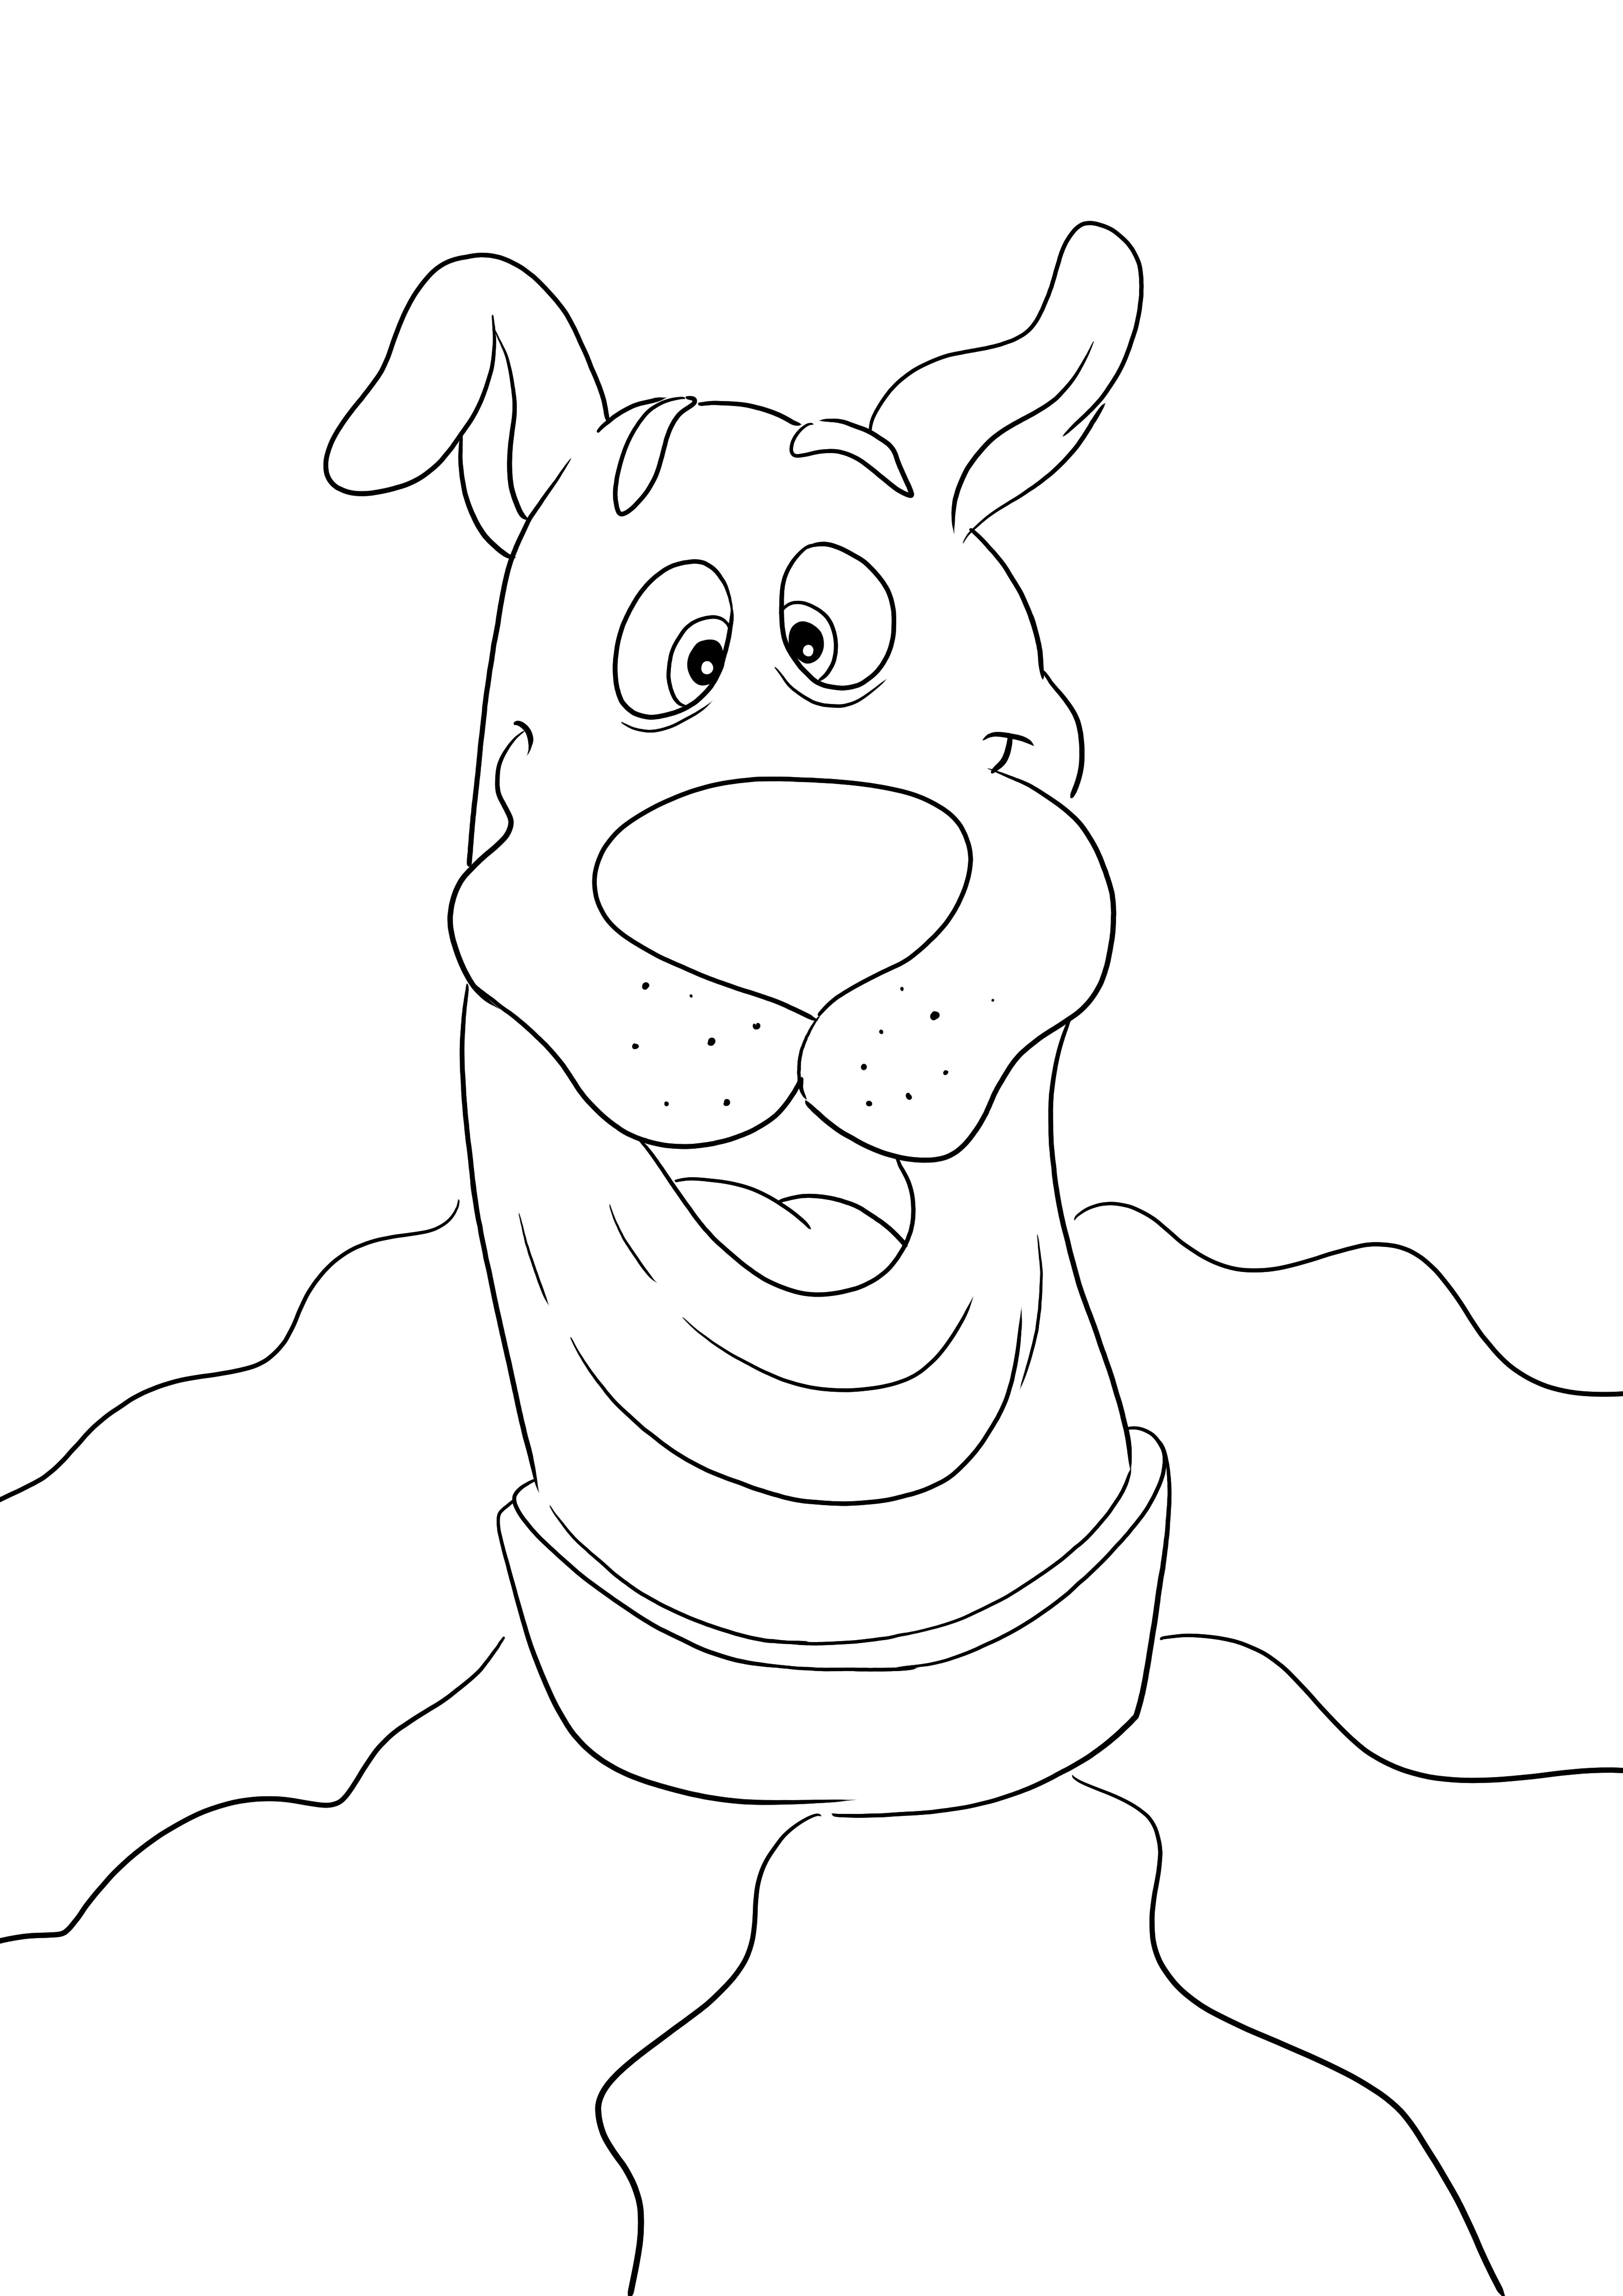 Aquí tienes nuestro imprimible gratuito de la cara graciosa de Scooby para colorear mientras te diviertes